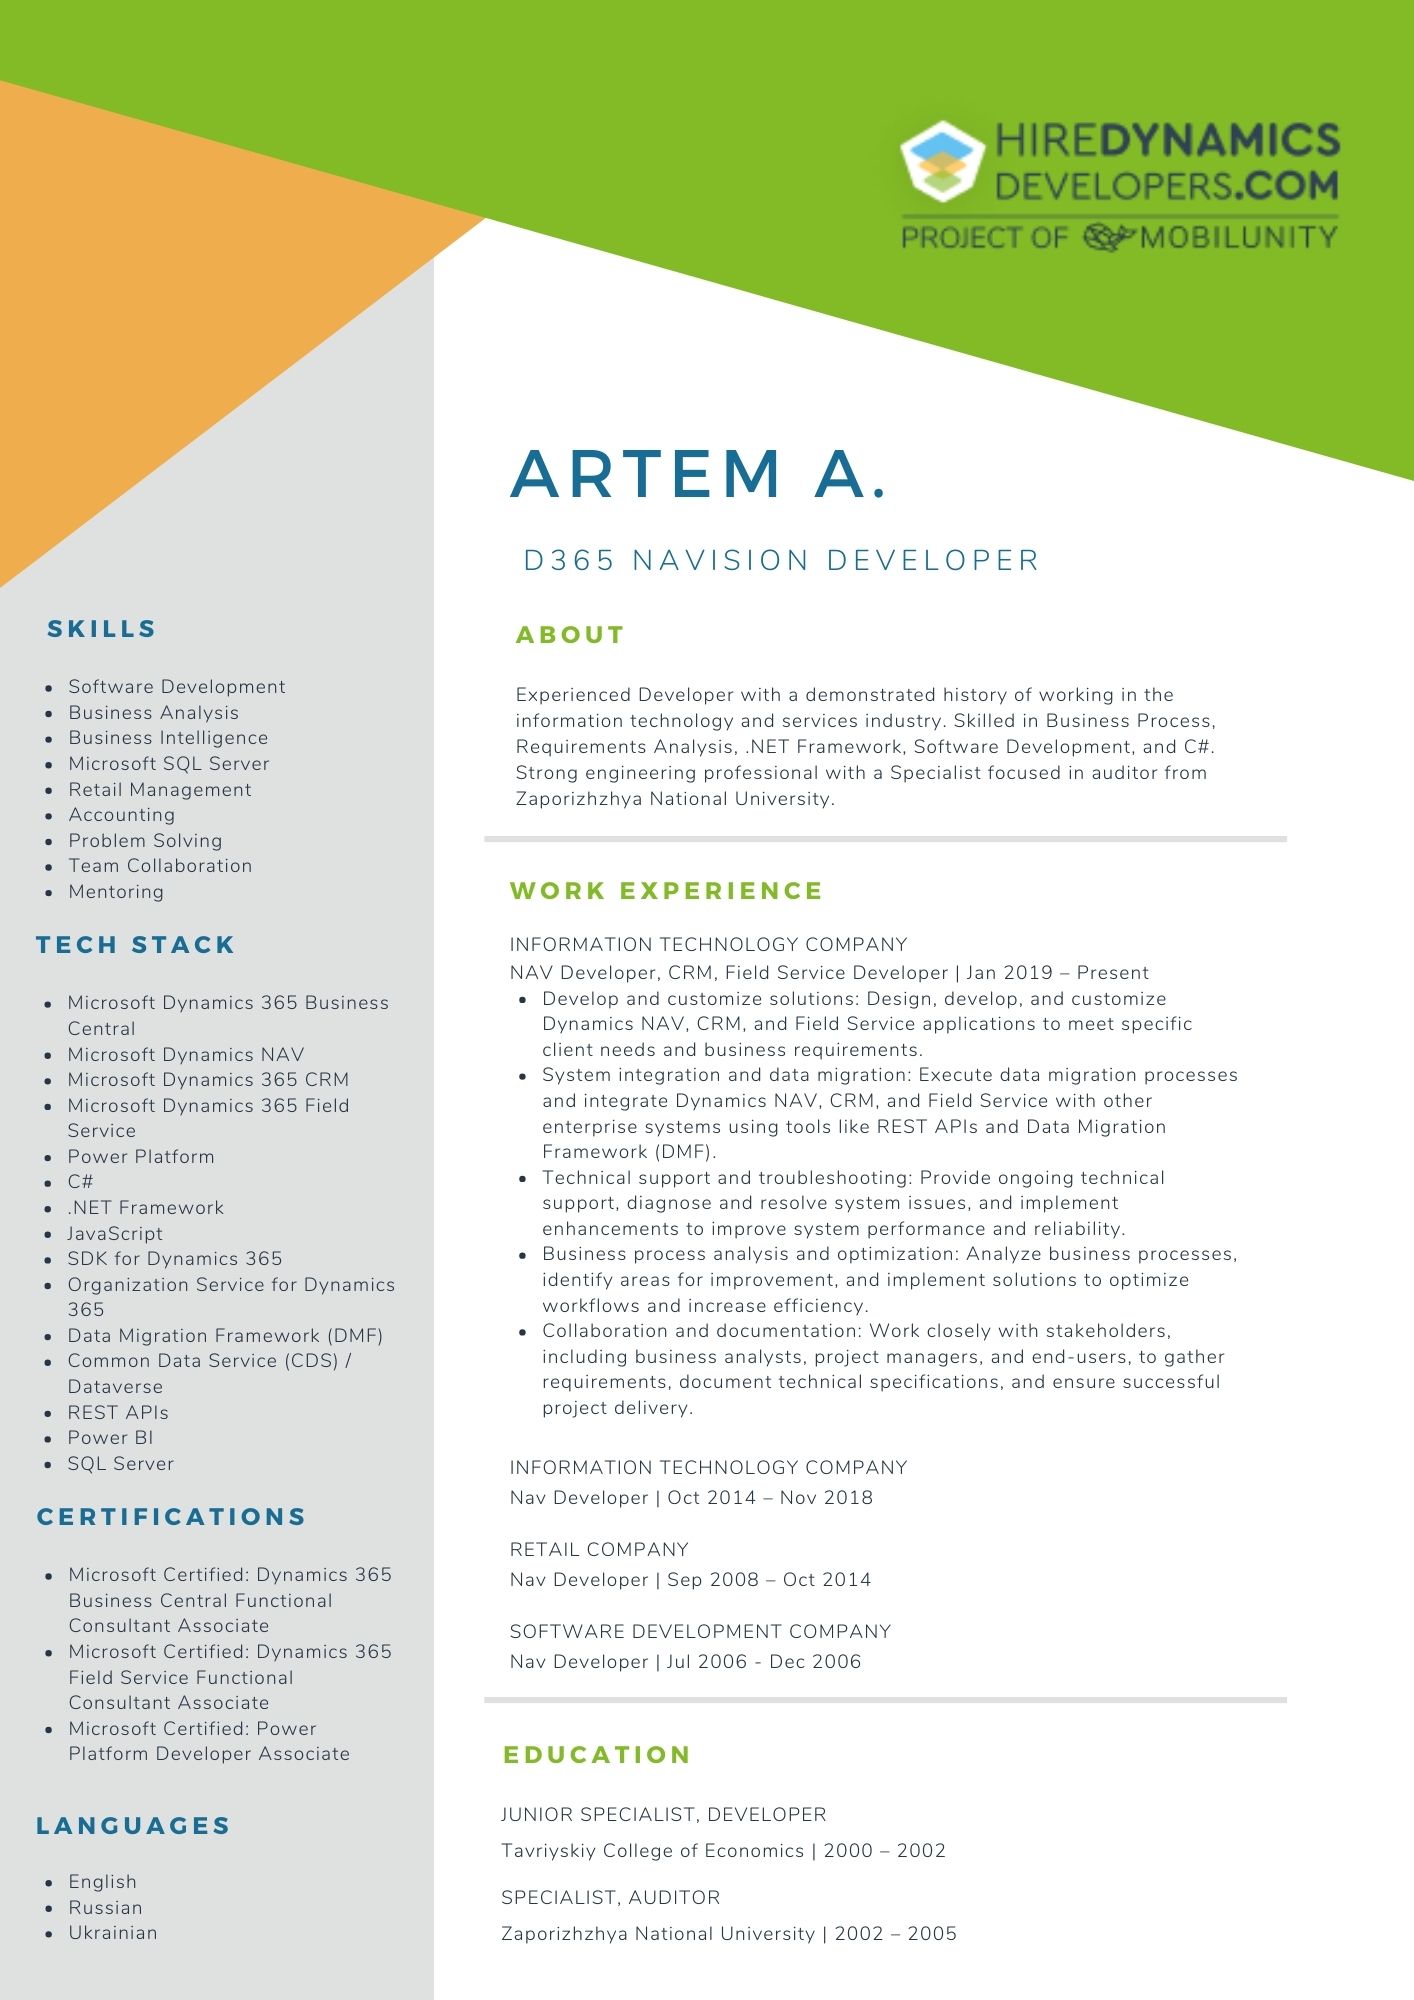 Artem A. – D365 Solution Developer / Navision Developer